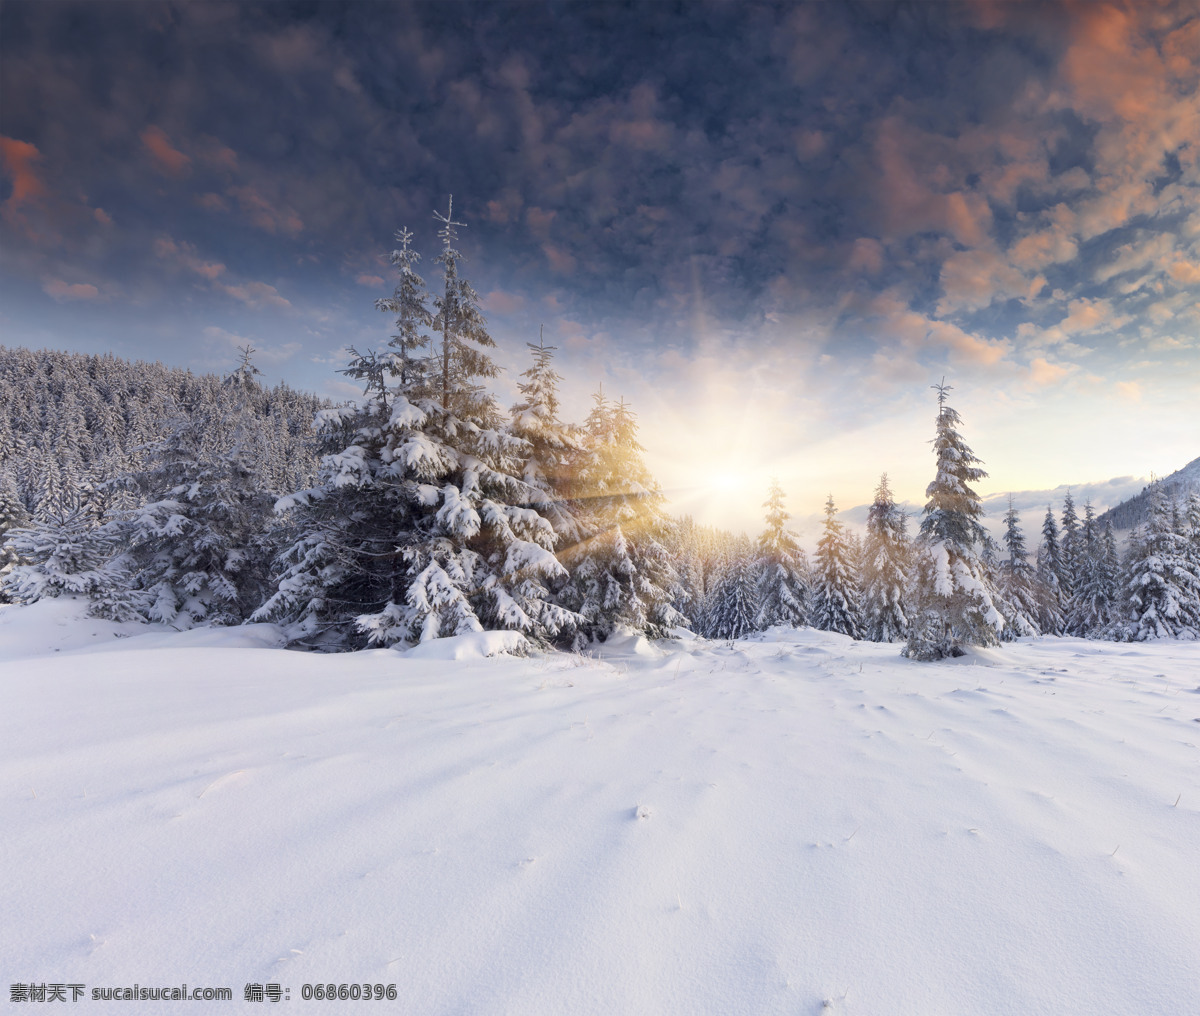 傍晚 时分 美丽 树林 雪地 傍晚时分 美丽的树林 树木 云朵 美景 雪景 山水风景 风景图片